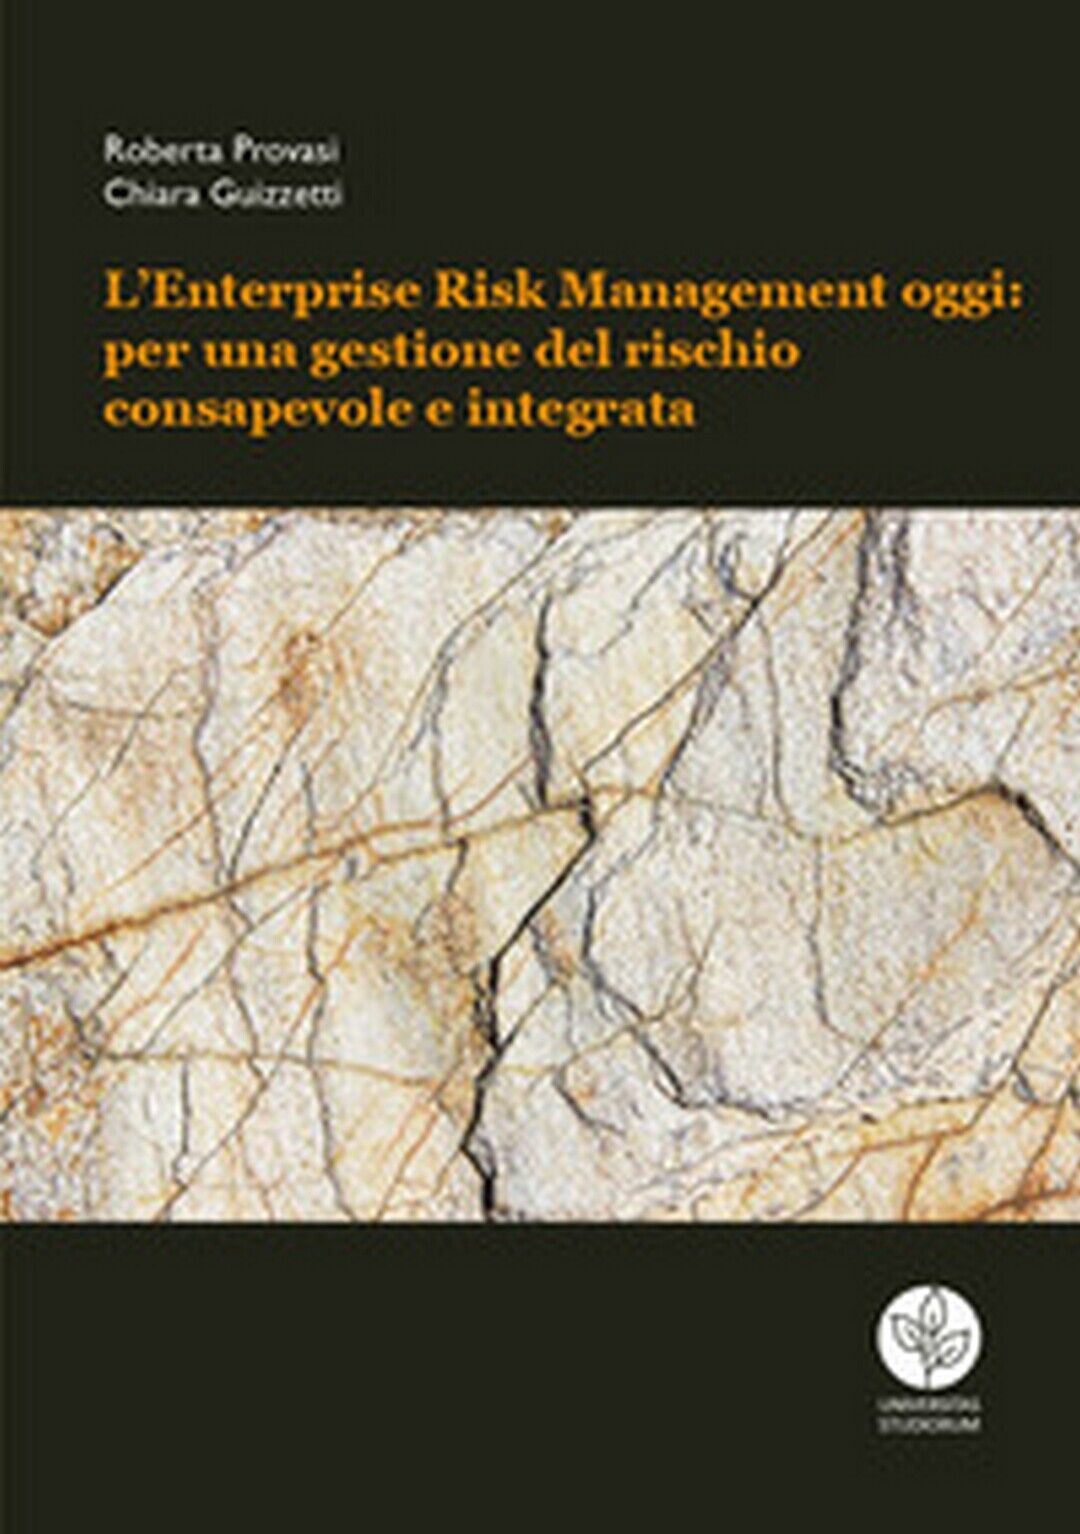 L'Enterprise Risk Management oggi: per una gestione del rischio consapevole 